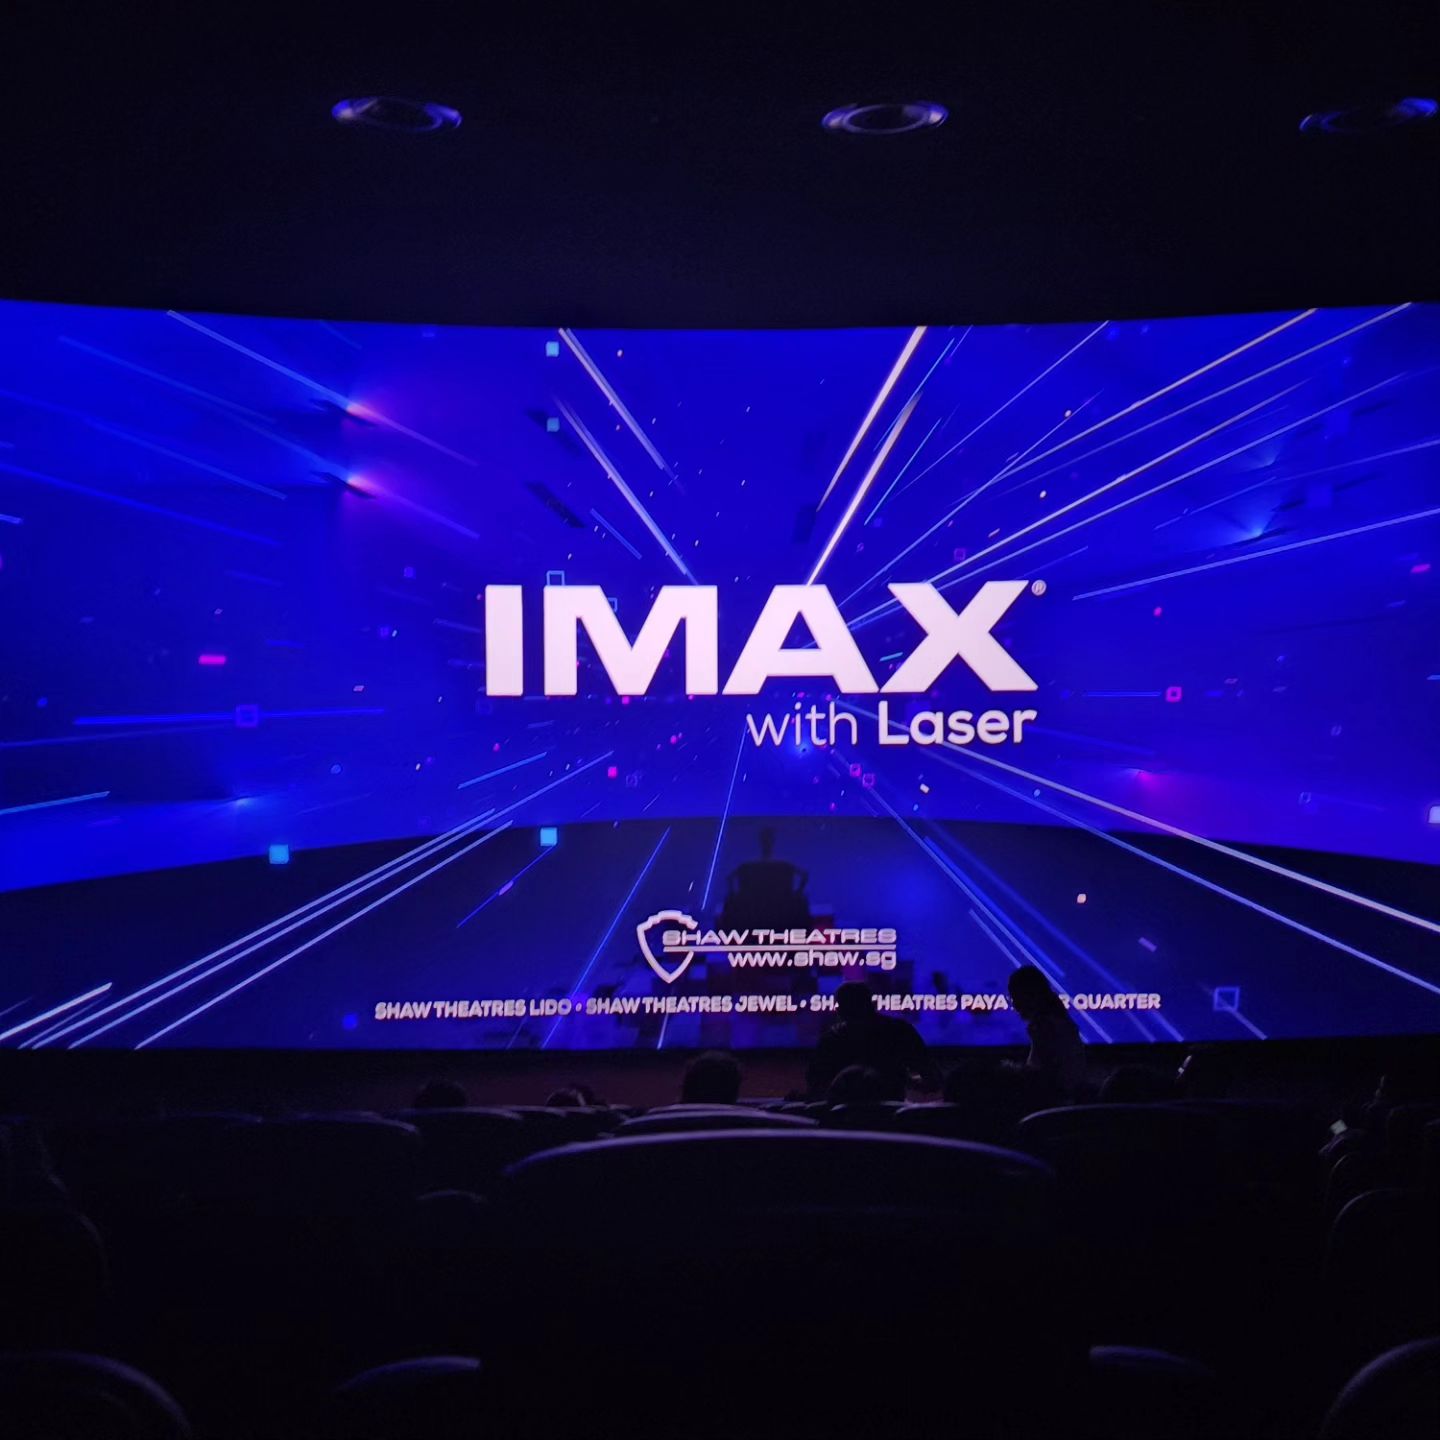 movie theatres singapore imax